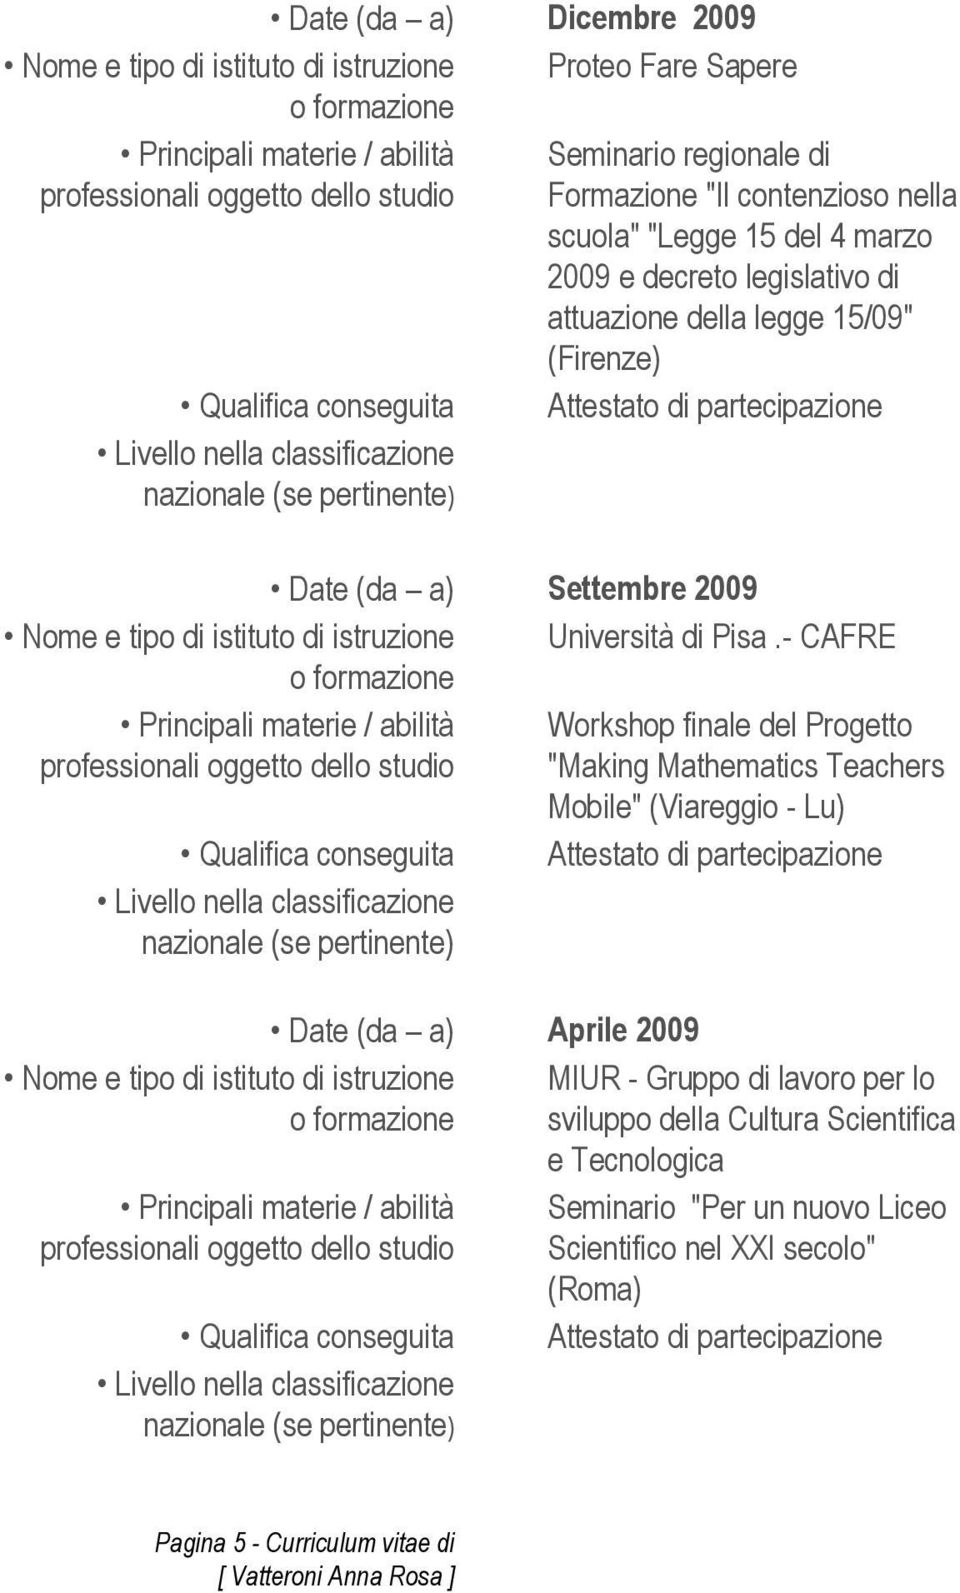 Pisa.- CAFRE Principali materie / abilità Workshop finale del Progetto "Making Mathematics Teachers Mobile" (Viareggio - Lu) Qualifica conseguita Attestato di partecipazione Nome e tipo di istituto